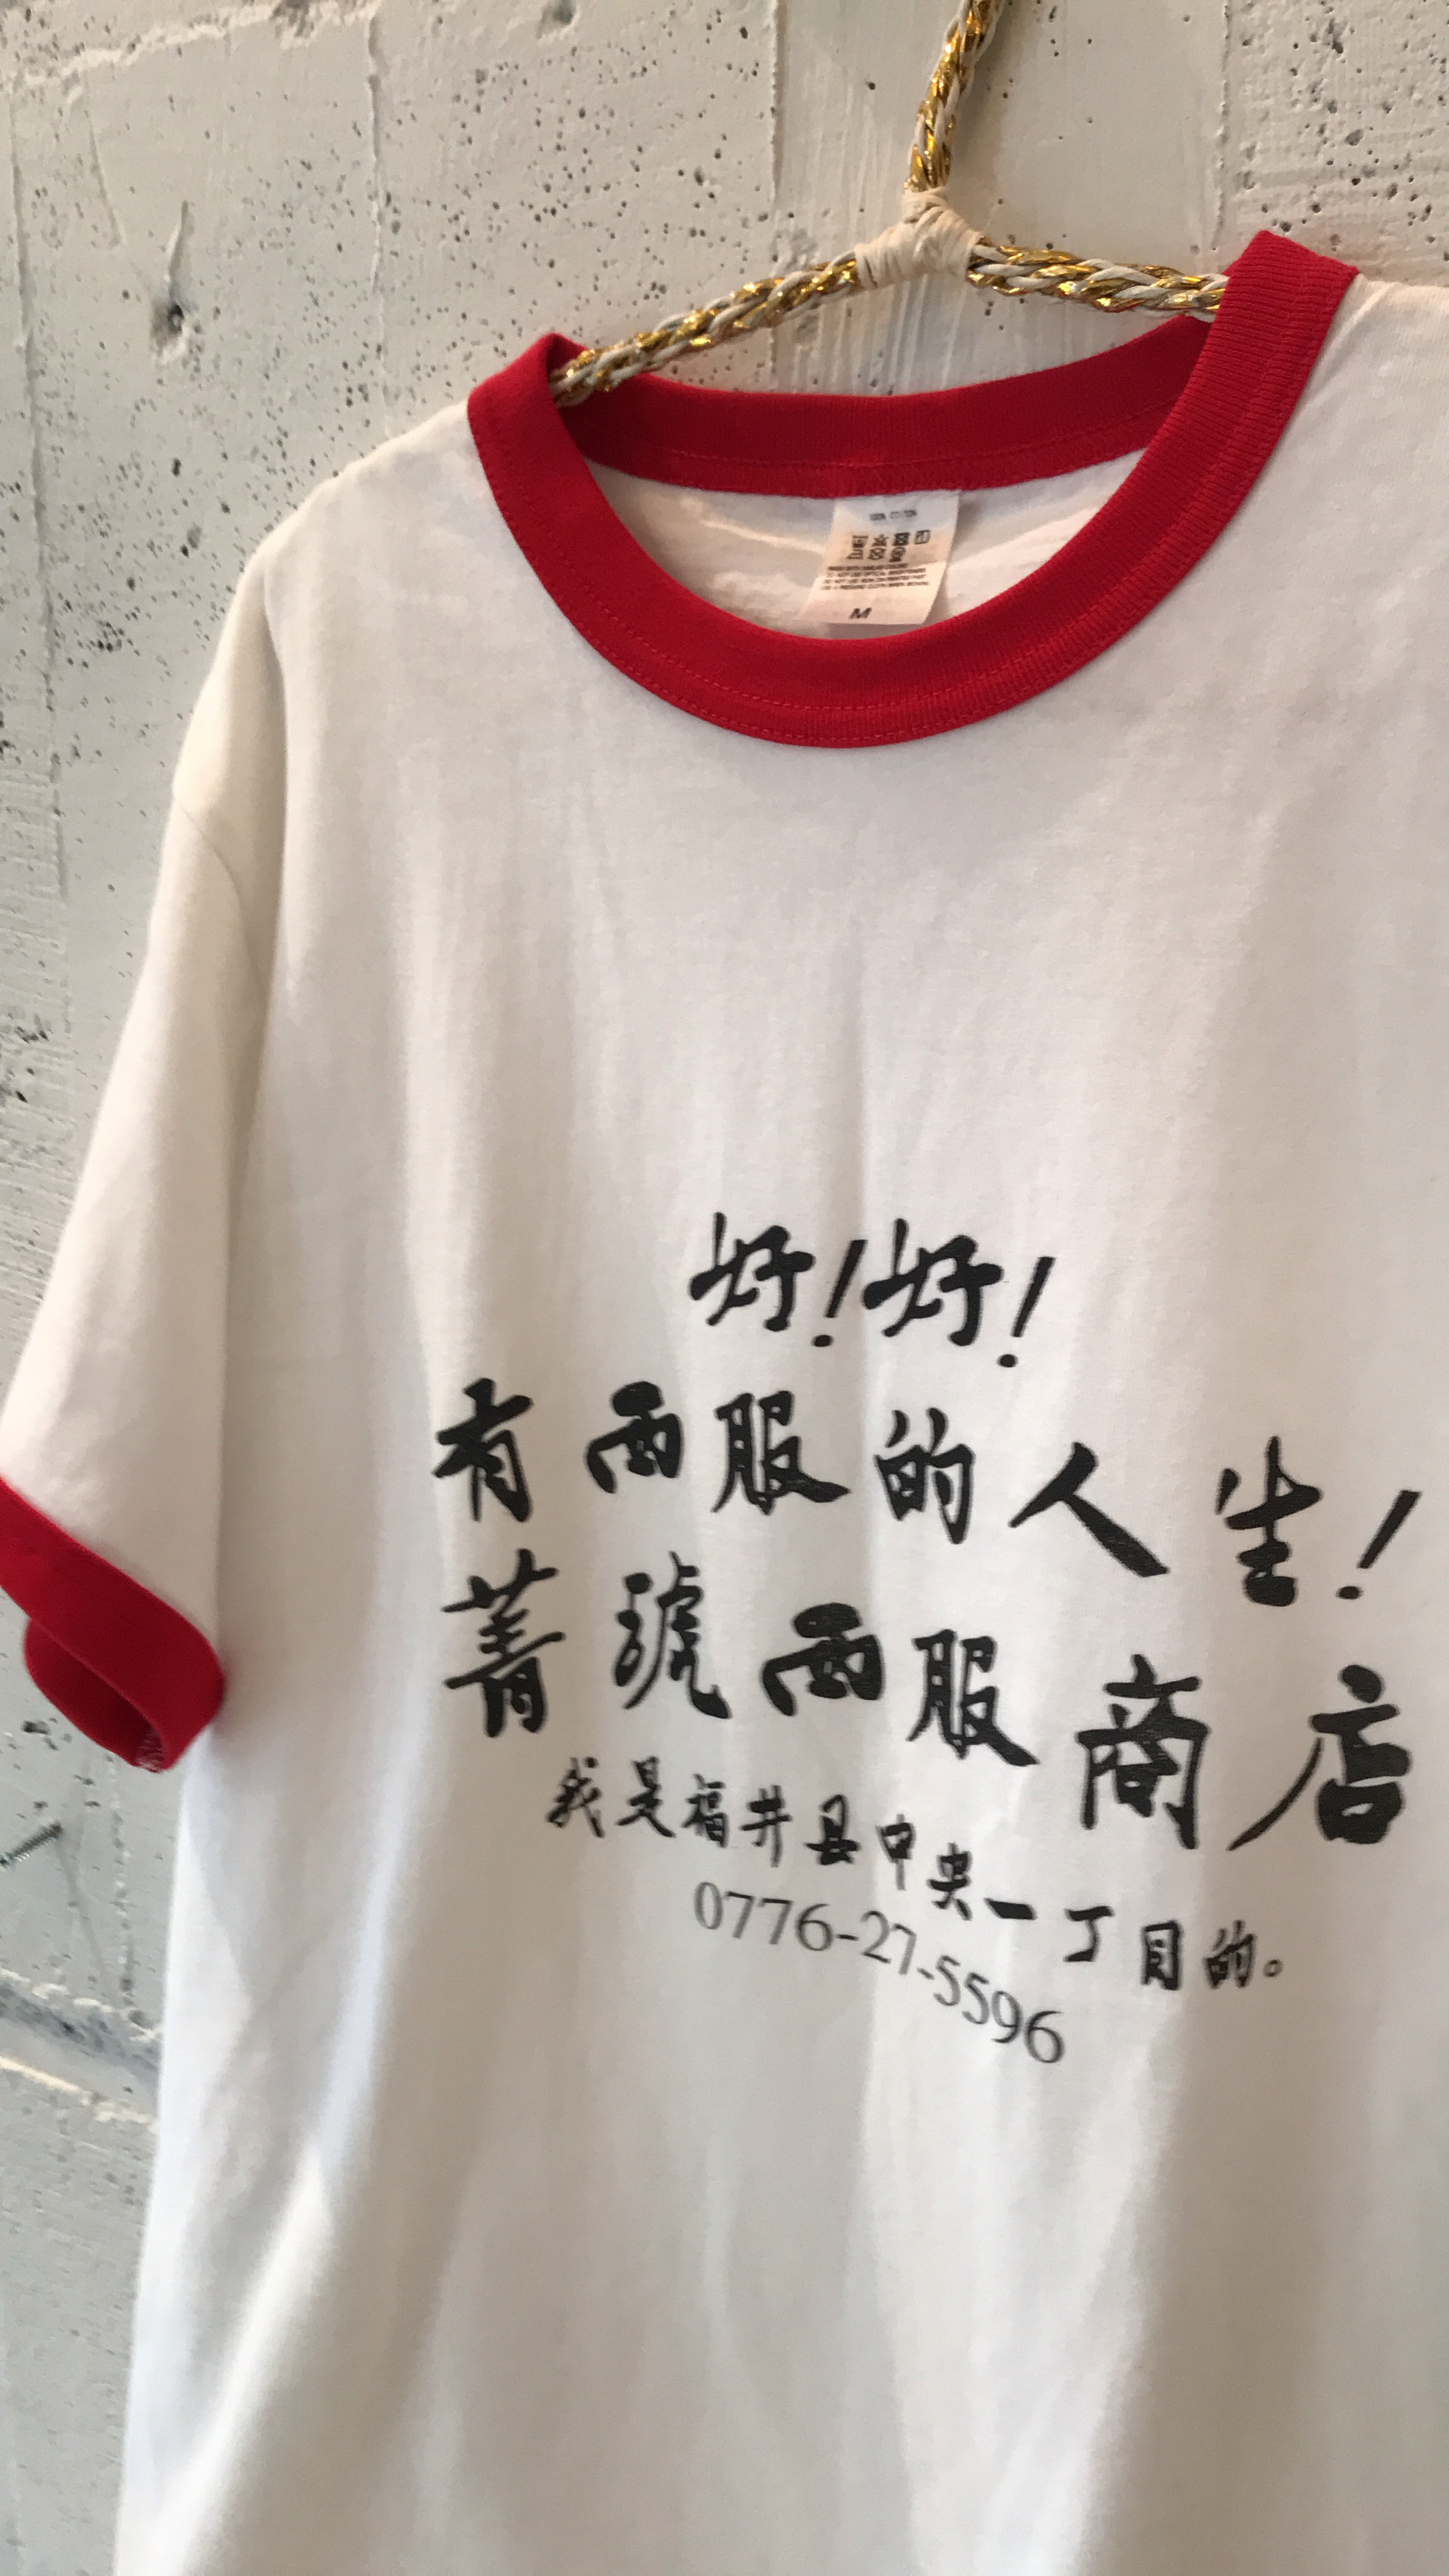 人気シリーズ台湾tシャツ パイピングバージョンの登場です Base Mag